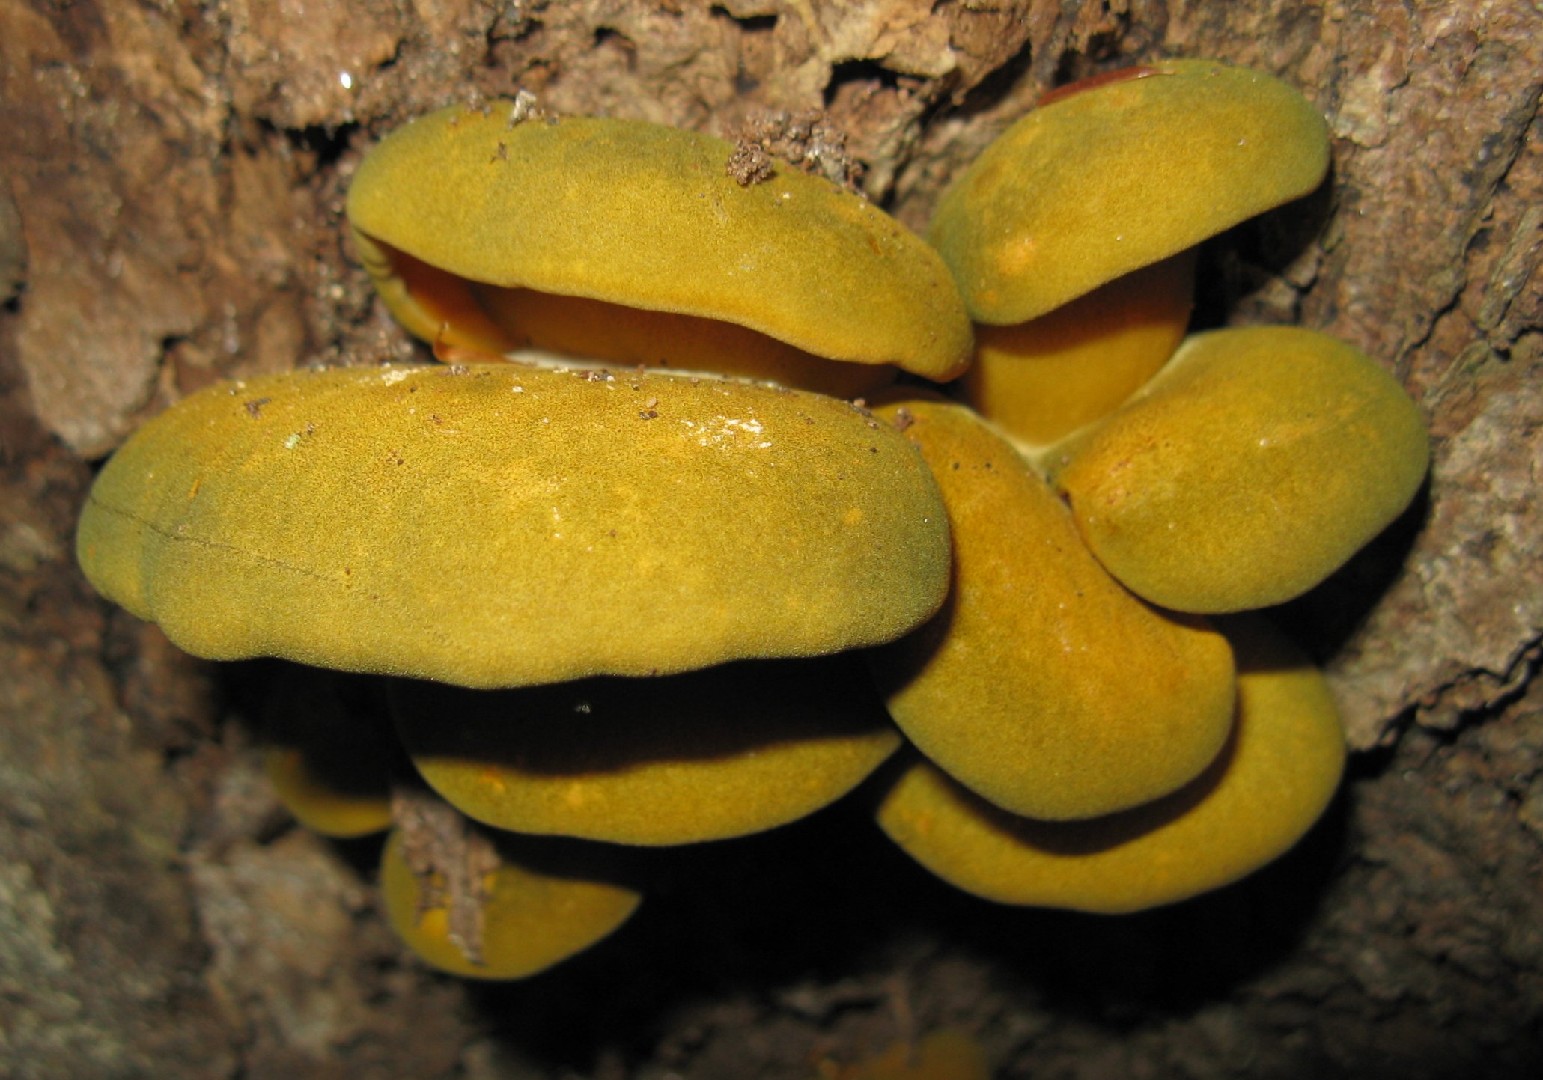 Late fall oyster mushroom (Panellus serotinus)